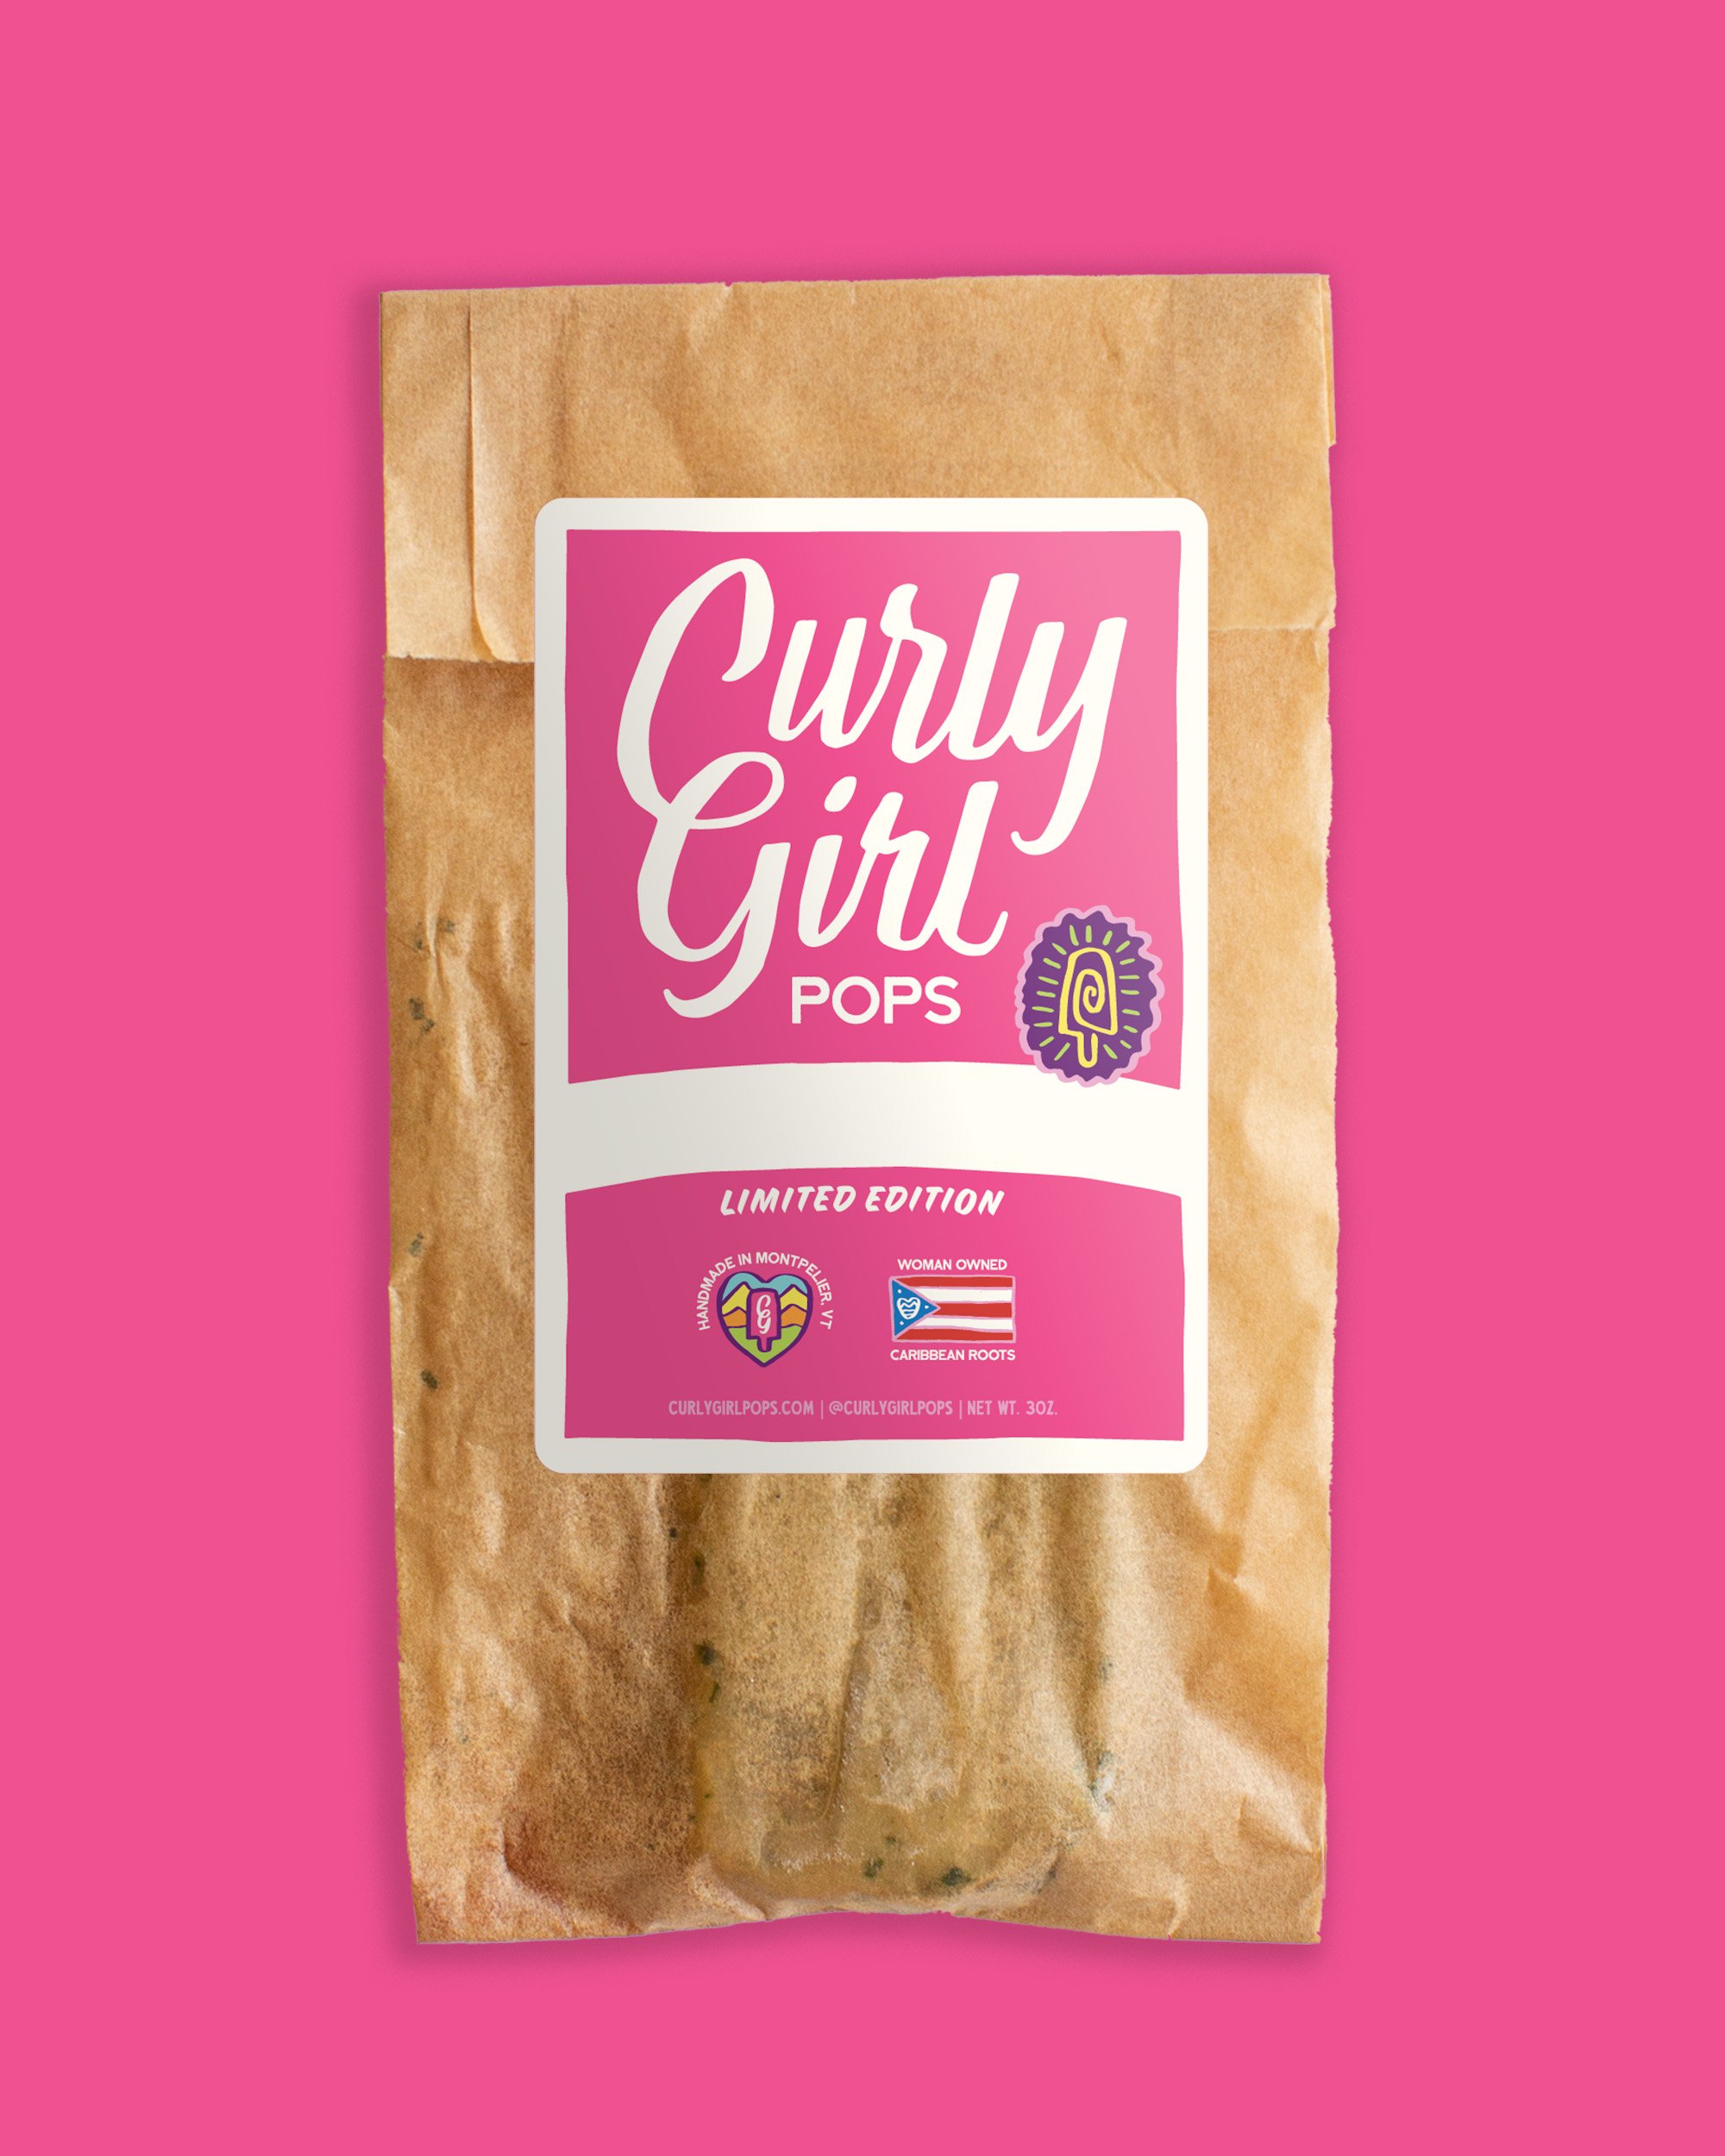 CurlyGirl-Packaging-Mockups-LimitedEdition.jpg